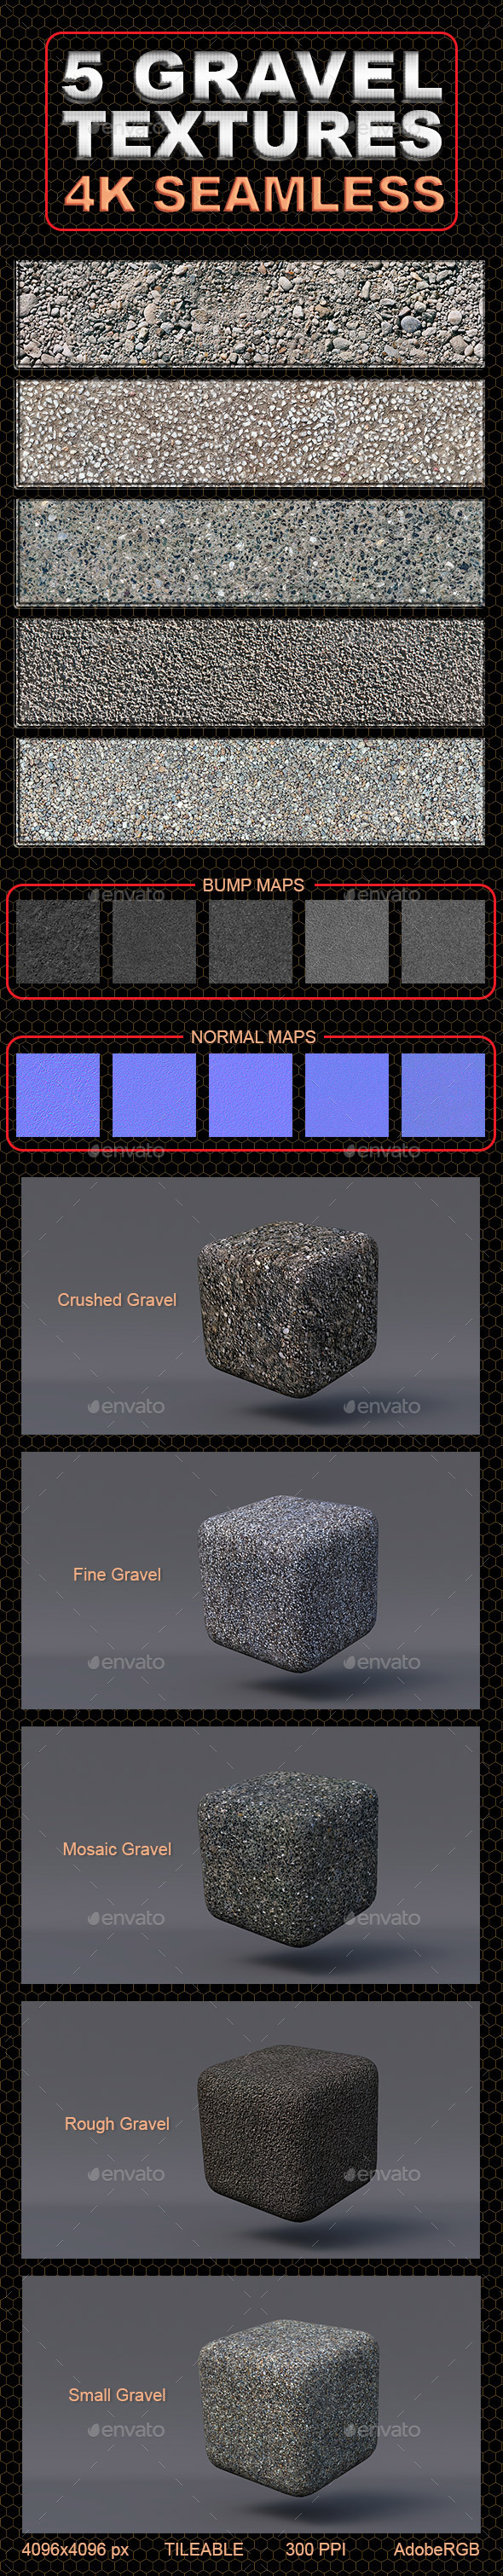 5 Gravel Textures - 3Docean 12508465